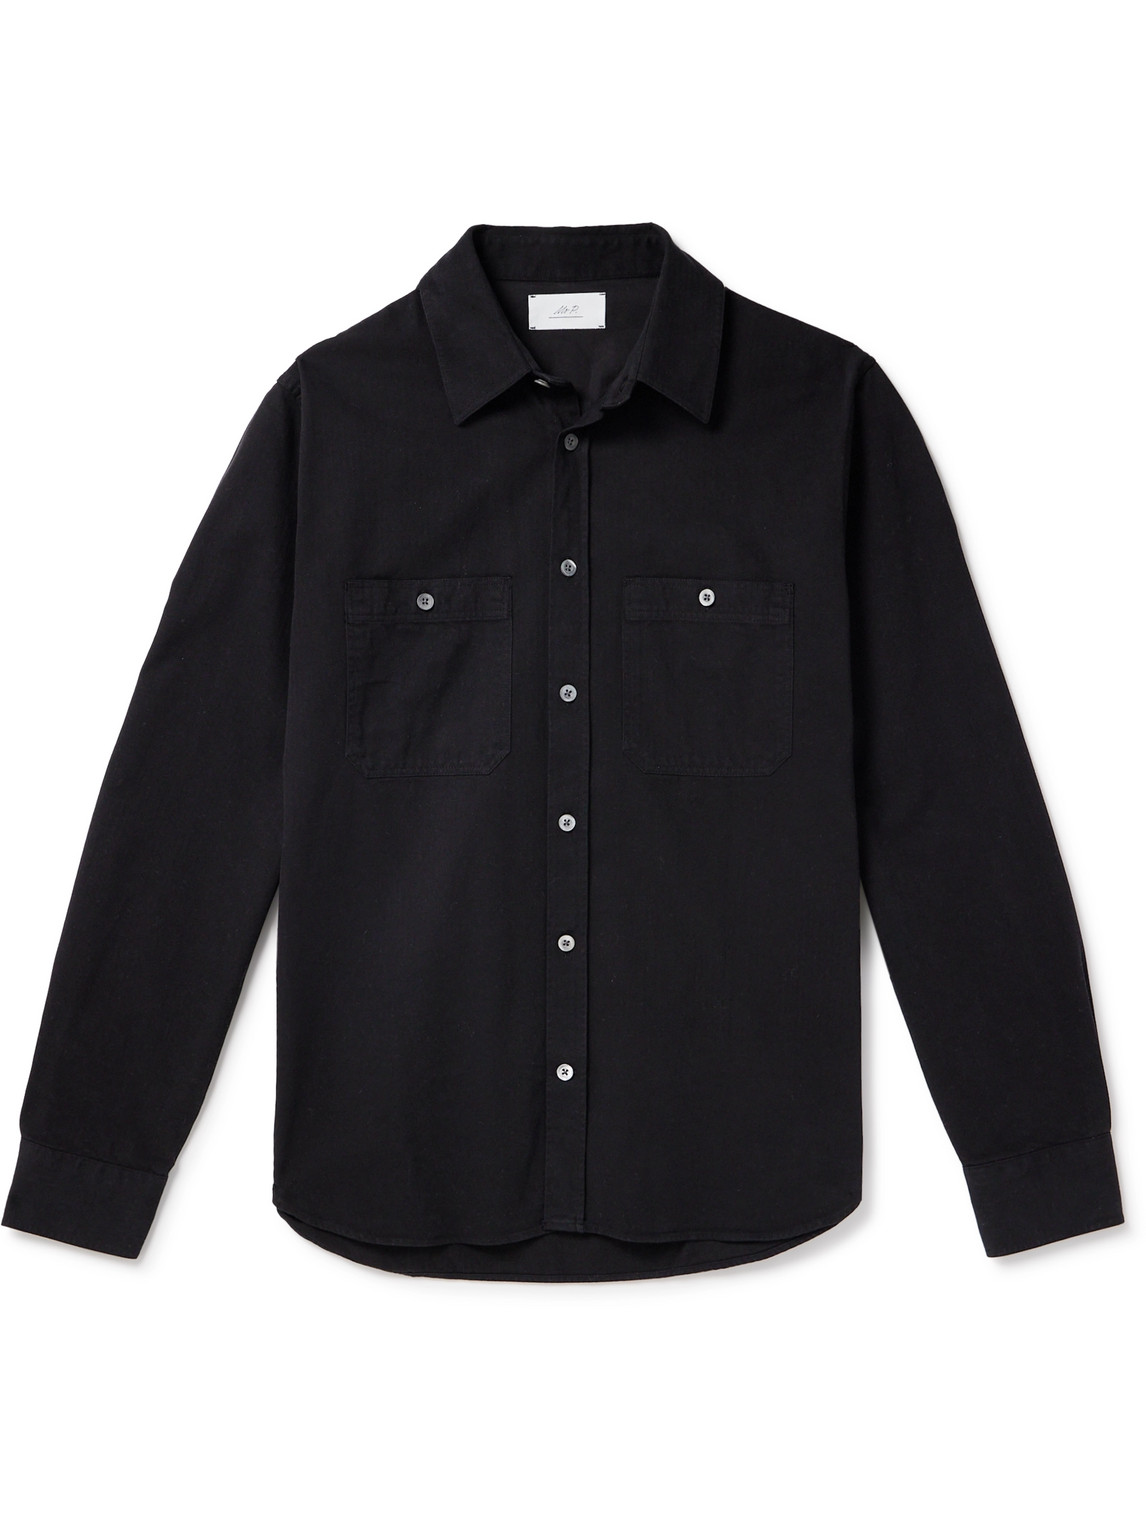 Mr P. - Herringbone Cotton-Twill Shirt - Men - Black - S von Mr P.